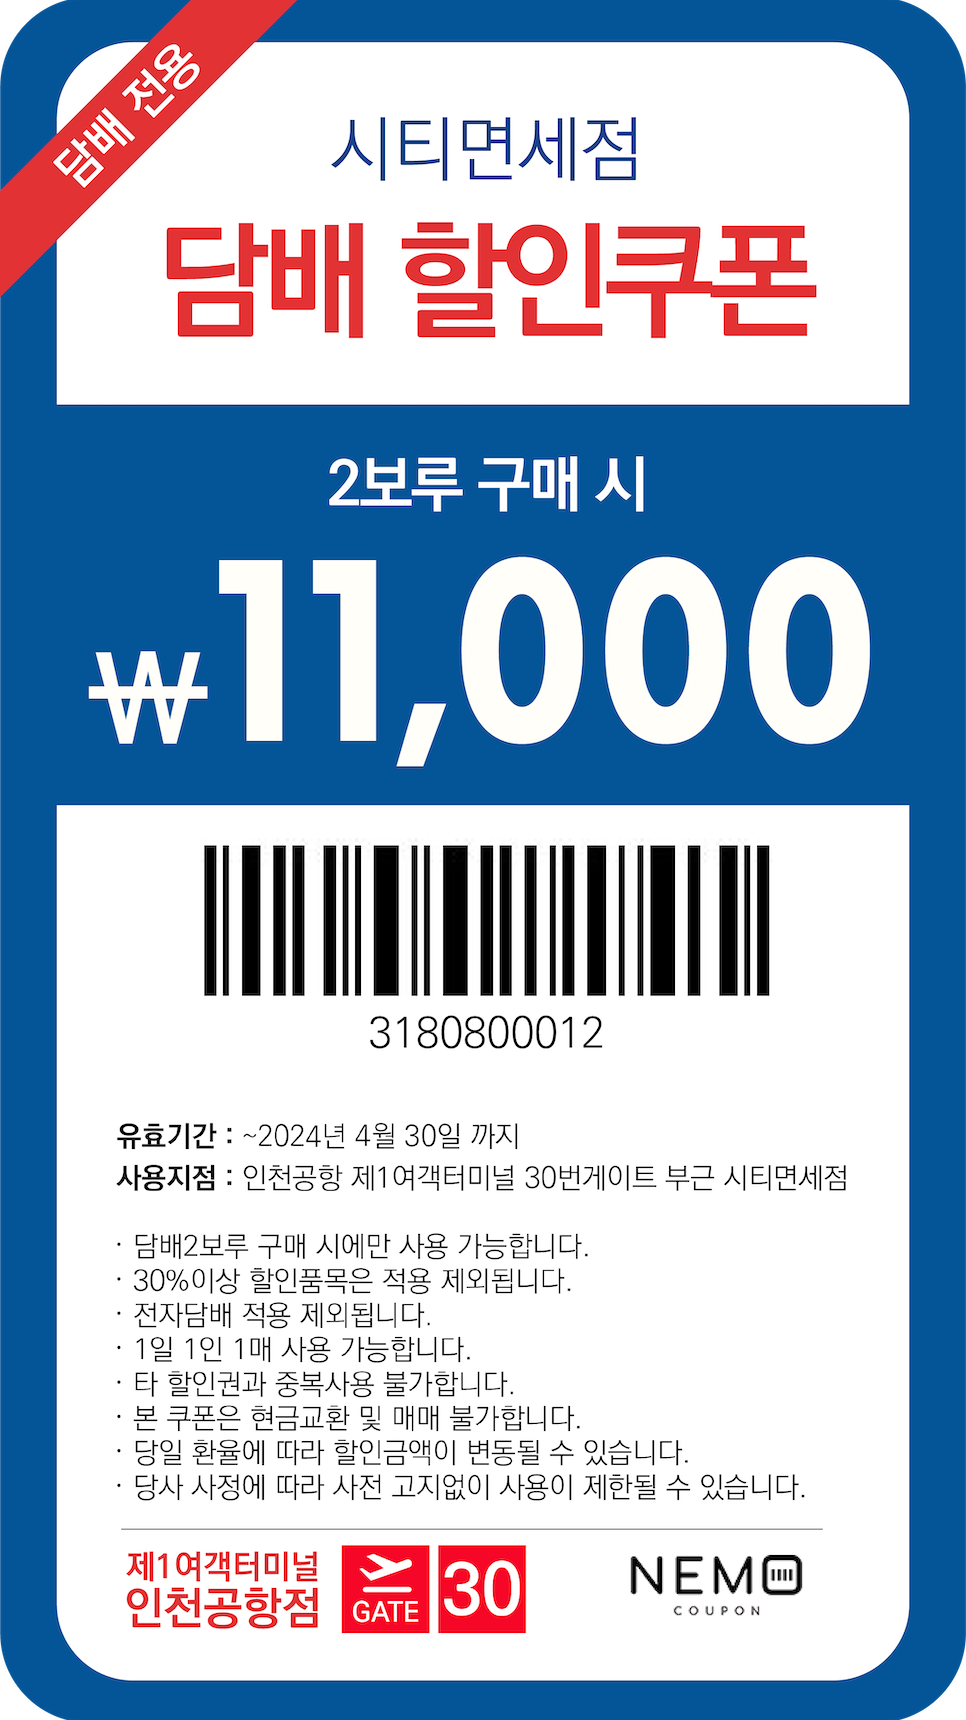 인천공항 담배 할인 쿠폰 면세점 가격 2보루 구매시 1만천원 혜택